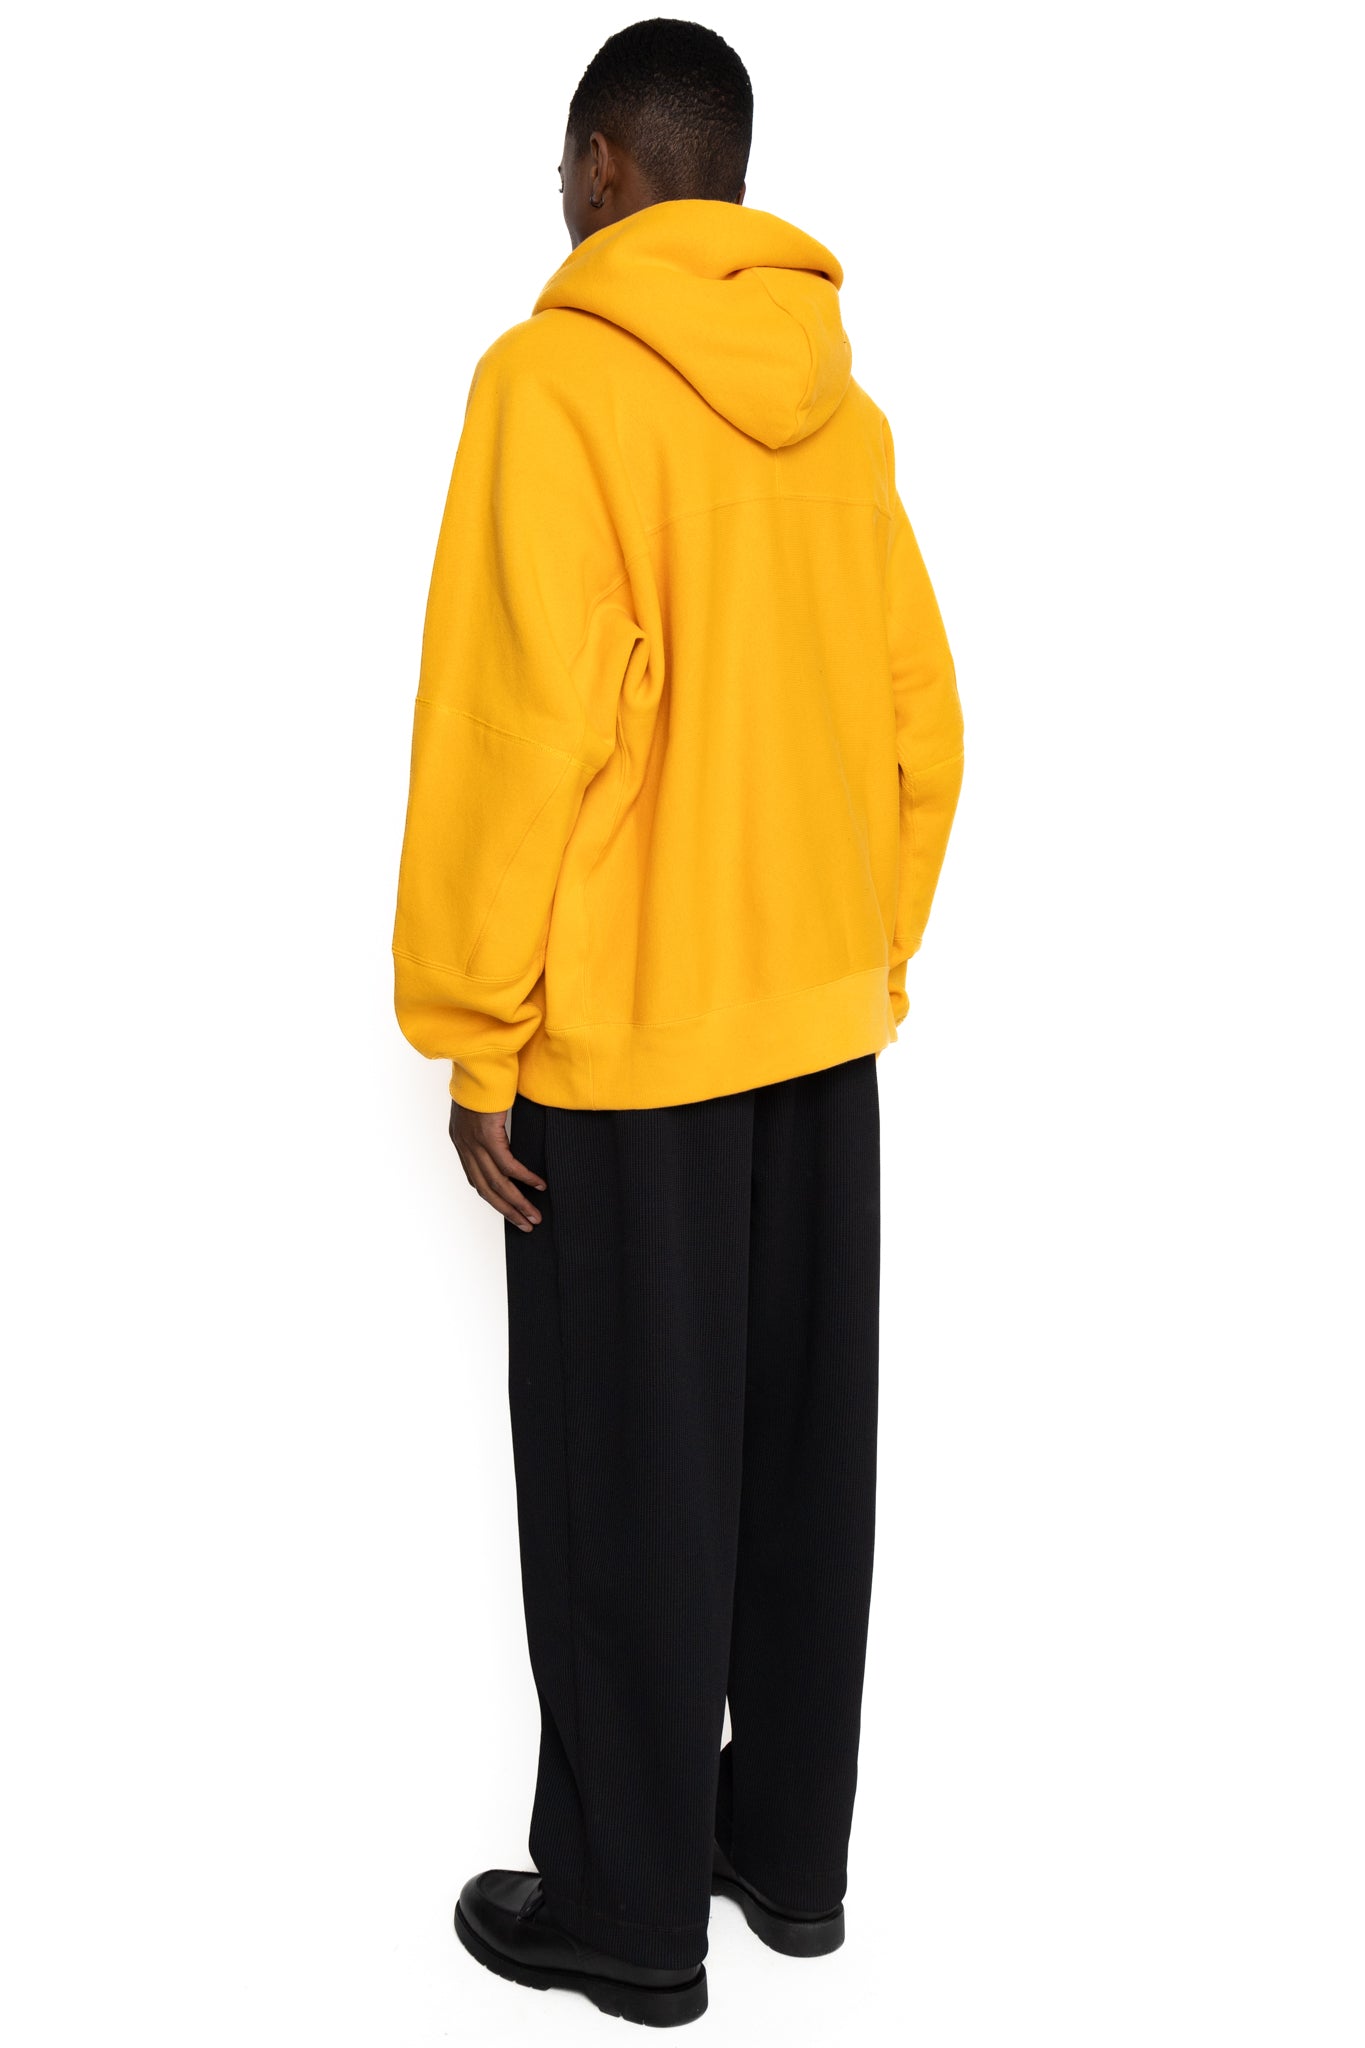 N. HOOLYWOOD x Champion Hooded Sweatshirt - Mustard